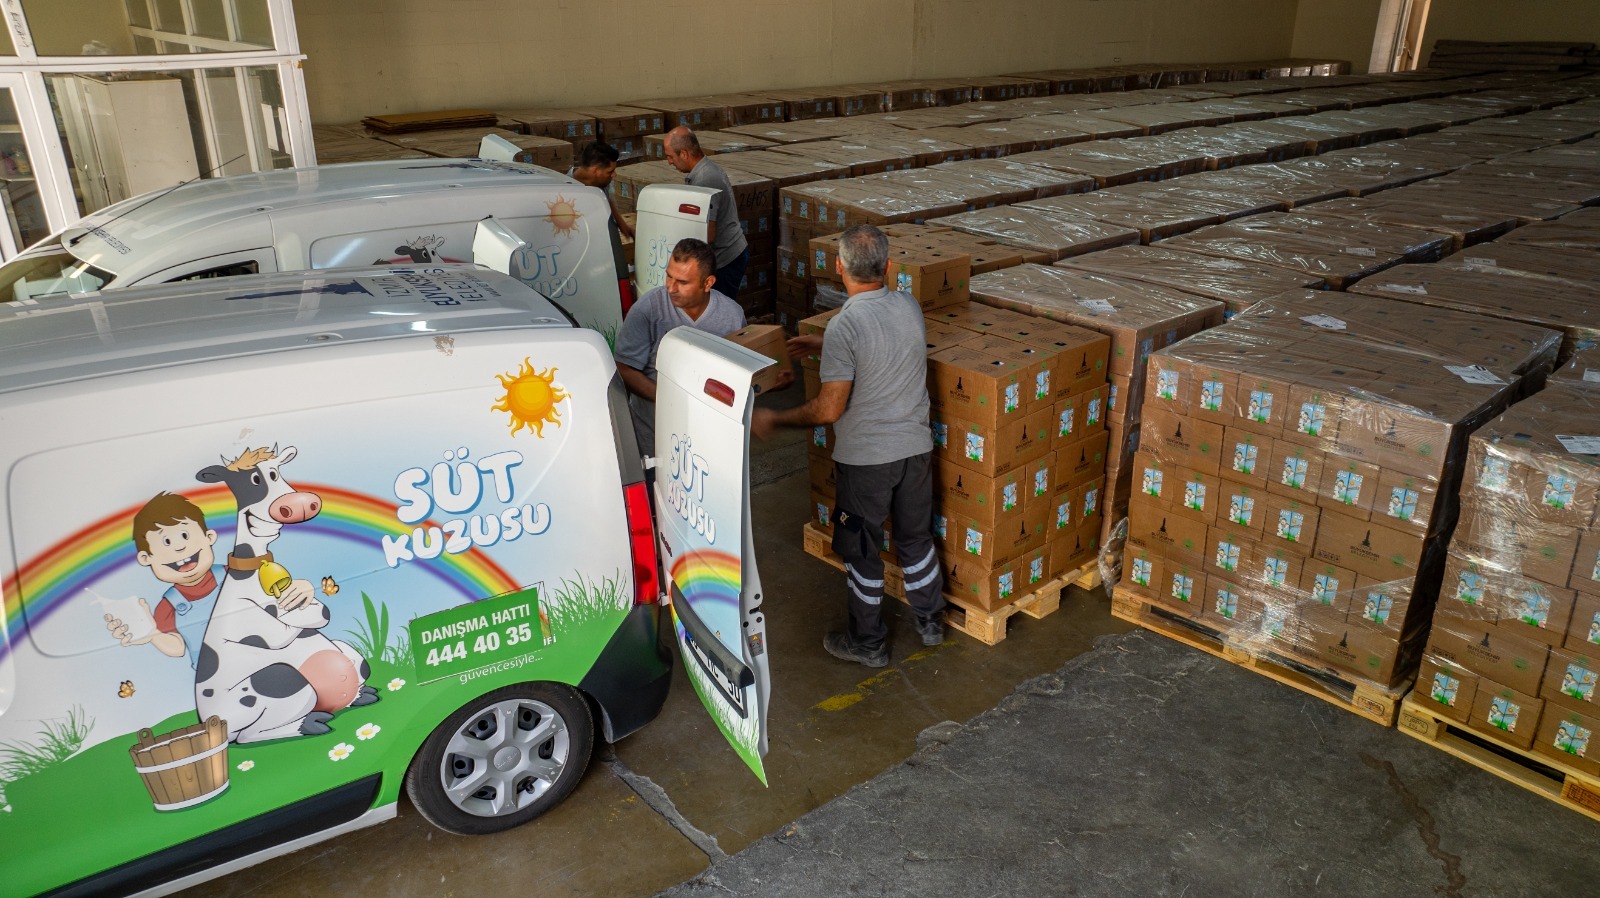 İzmir’de Süt Kuzusu Projesi kapsamında dağıtımlar başladı